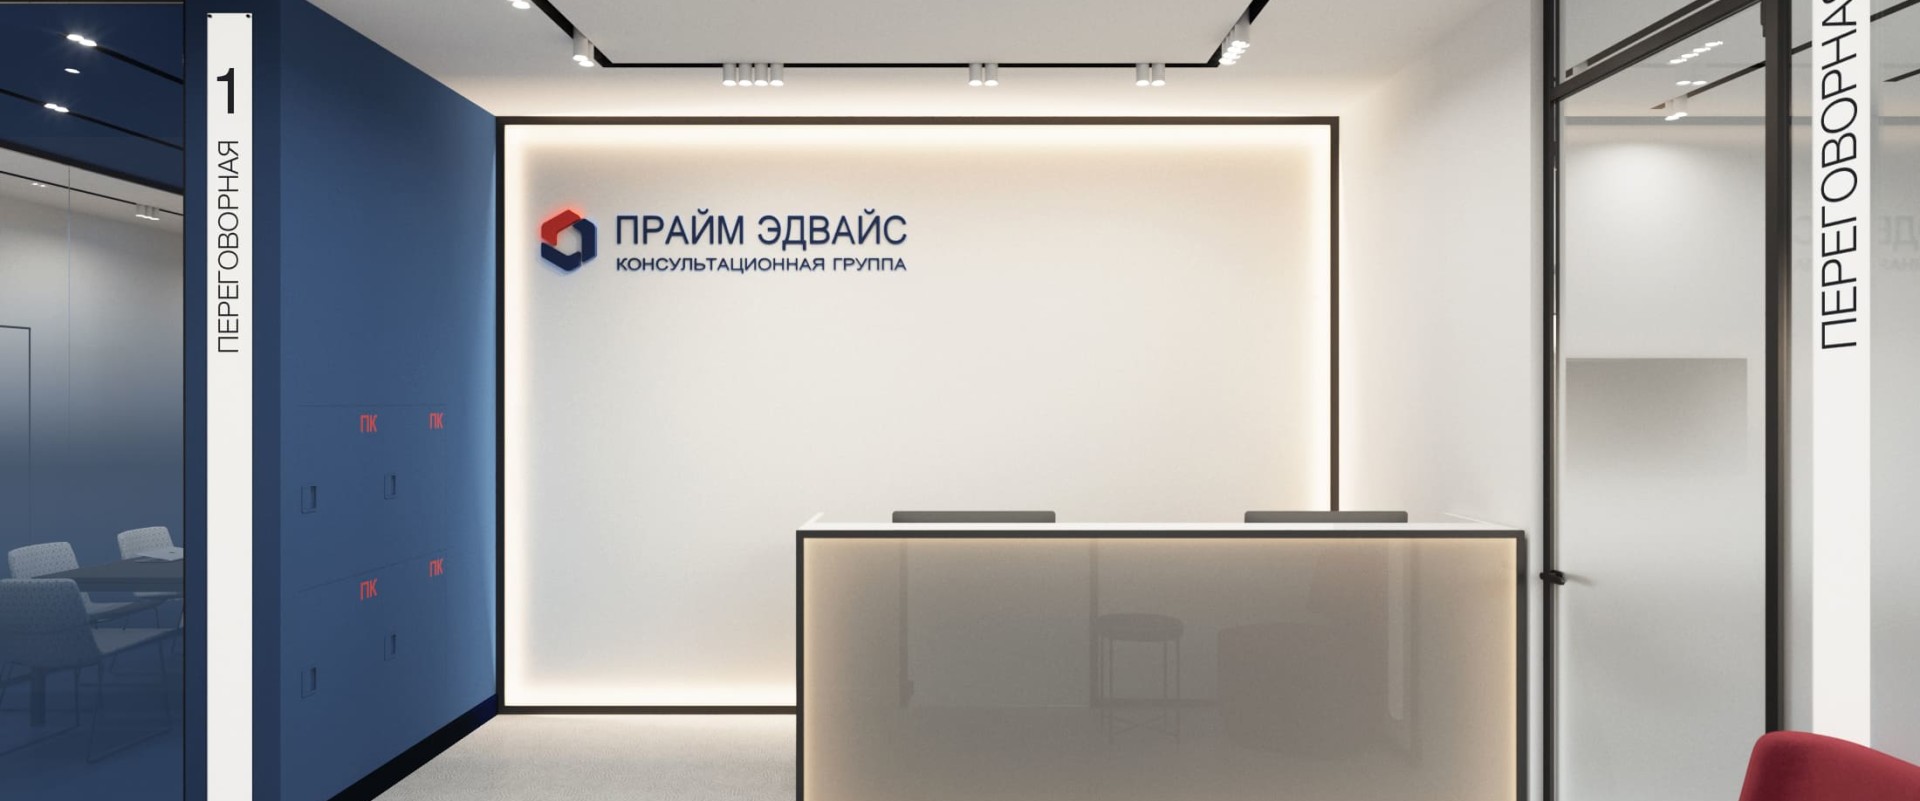 Дизайн офиса для юридической компании Прайм Эдвайс в стиле минимализм 